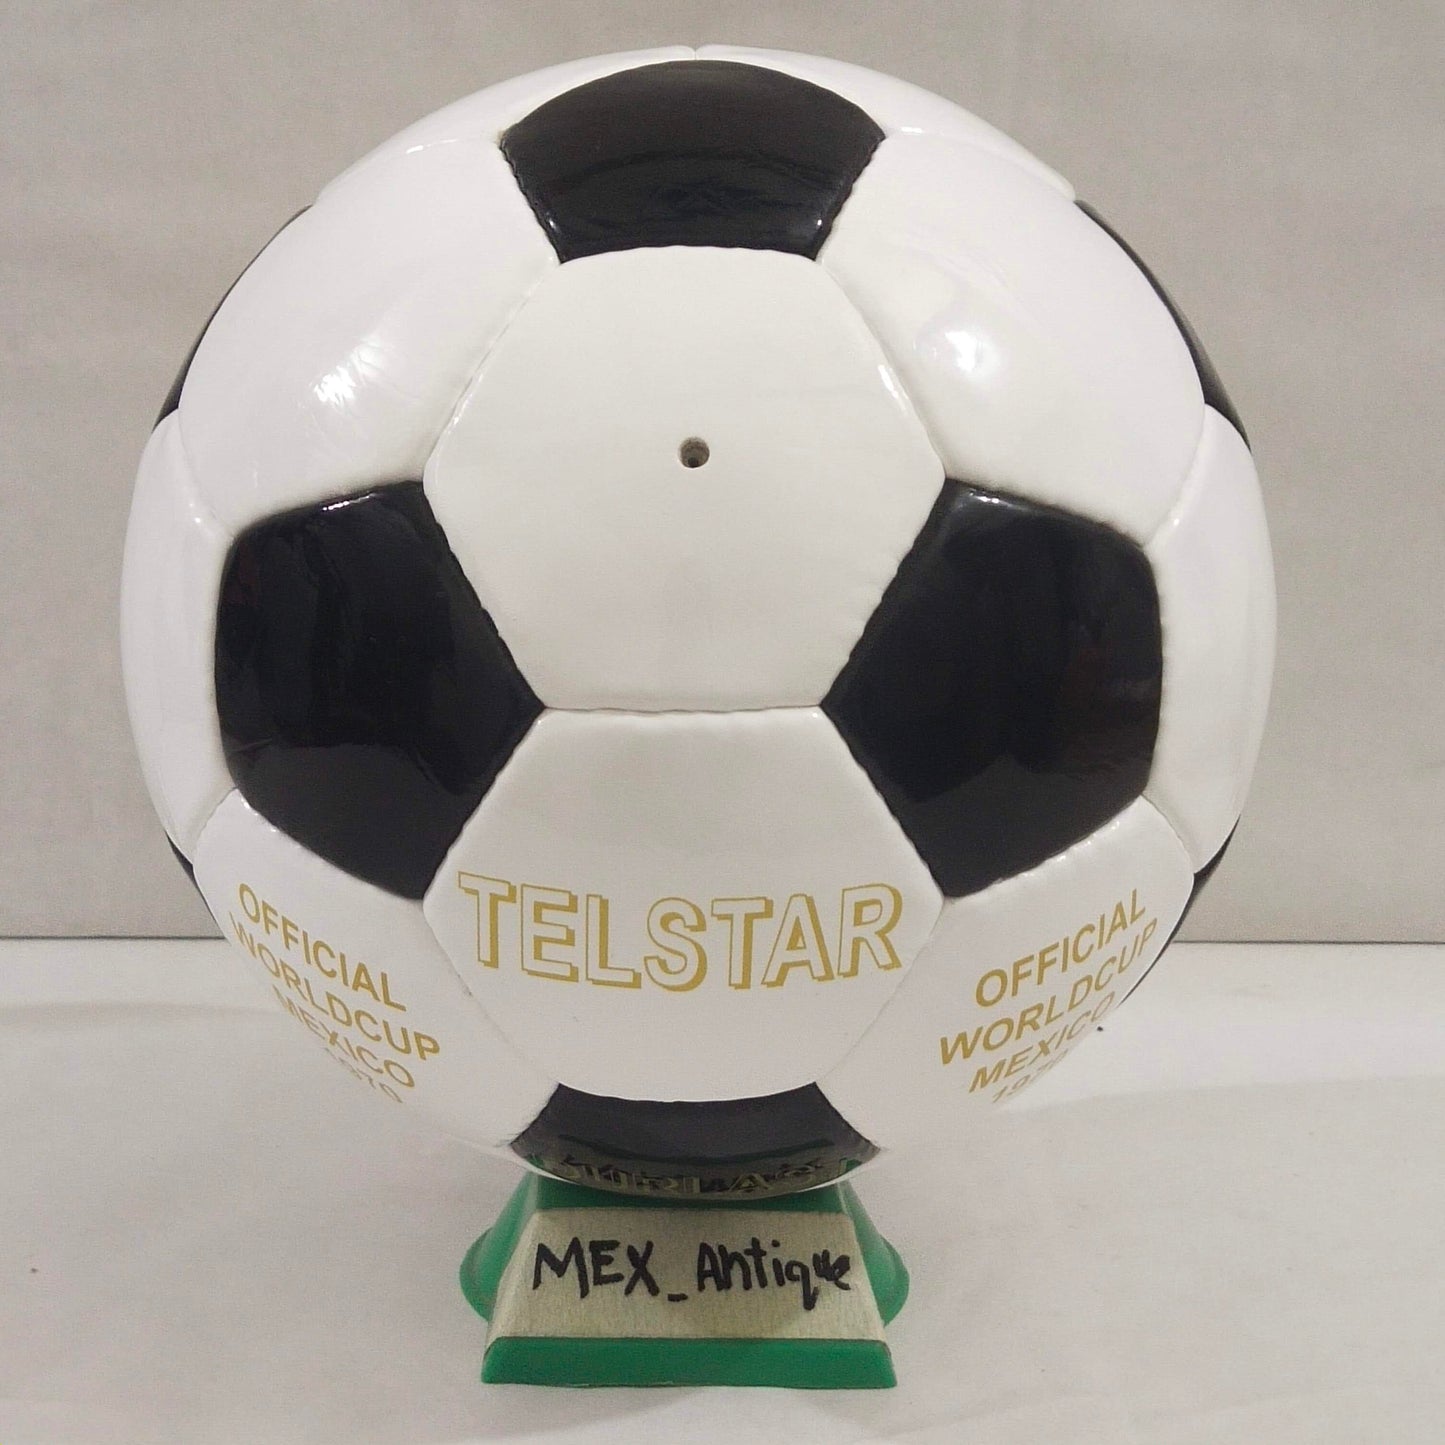 Adidas Telstar Durlast | 1972 | UEFA Europa League | Official Match Ball | Size 5 02